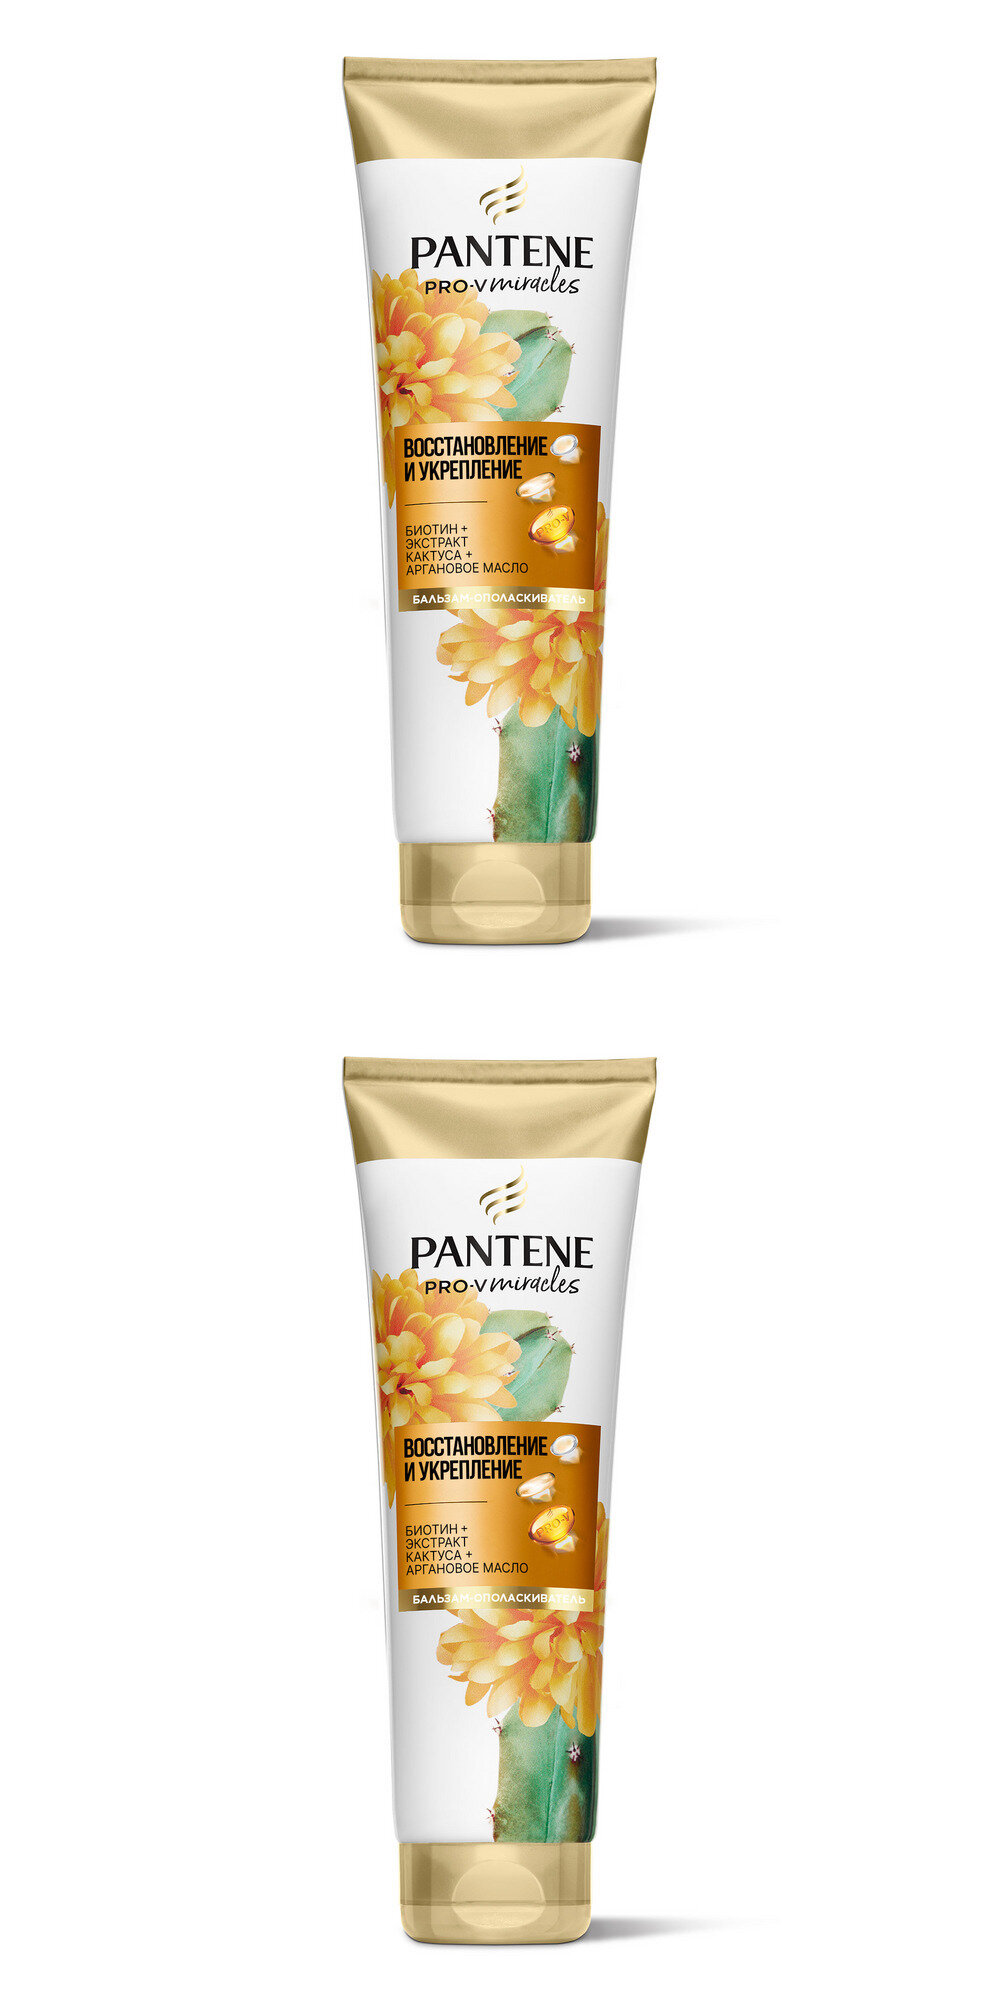 Pantene Pro-V Бальзам-ополаскиватель для волос женский Miracles Восстановление и укрепление, 200мл, 2 упаковки